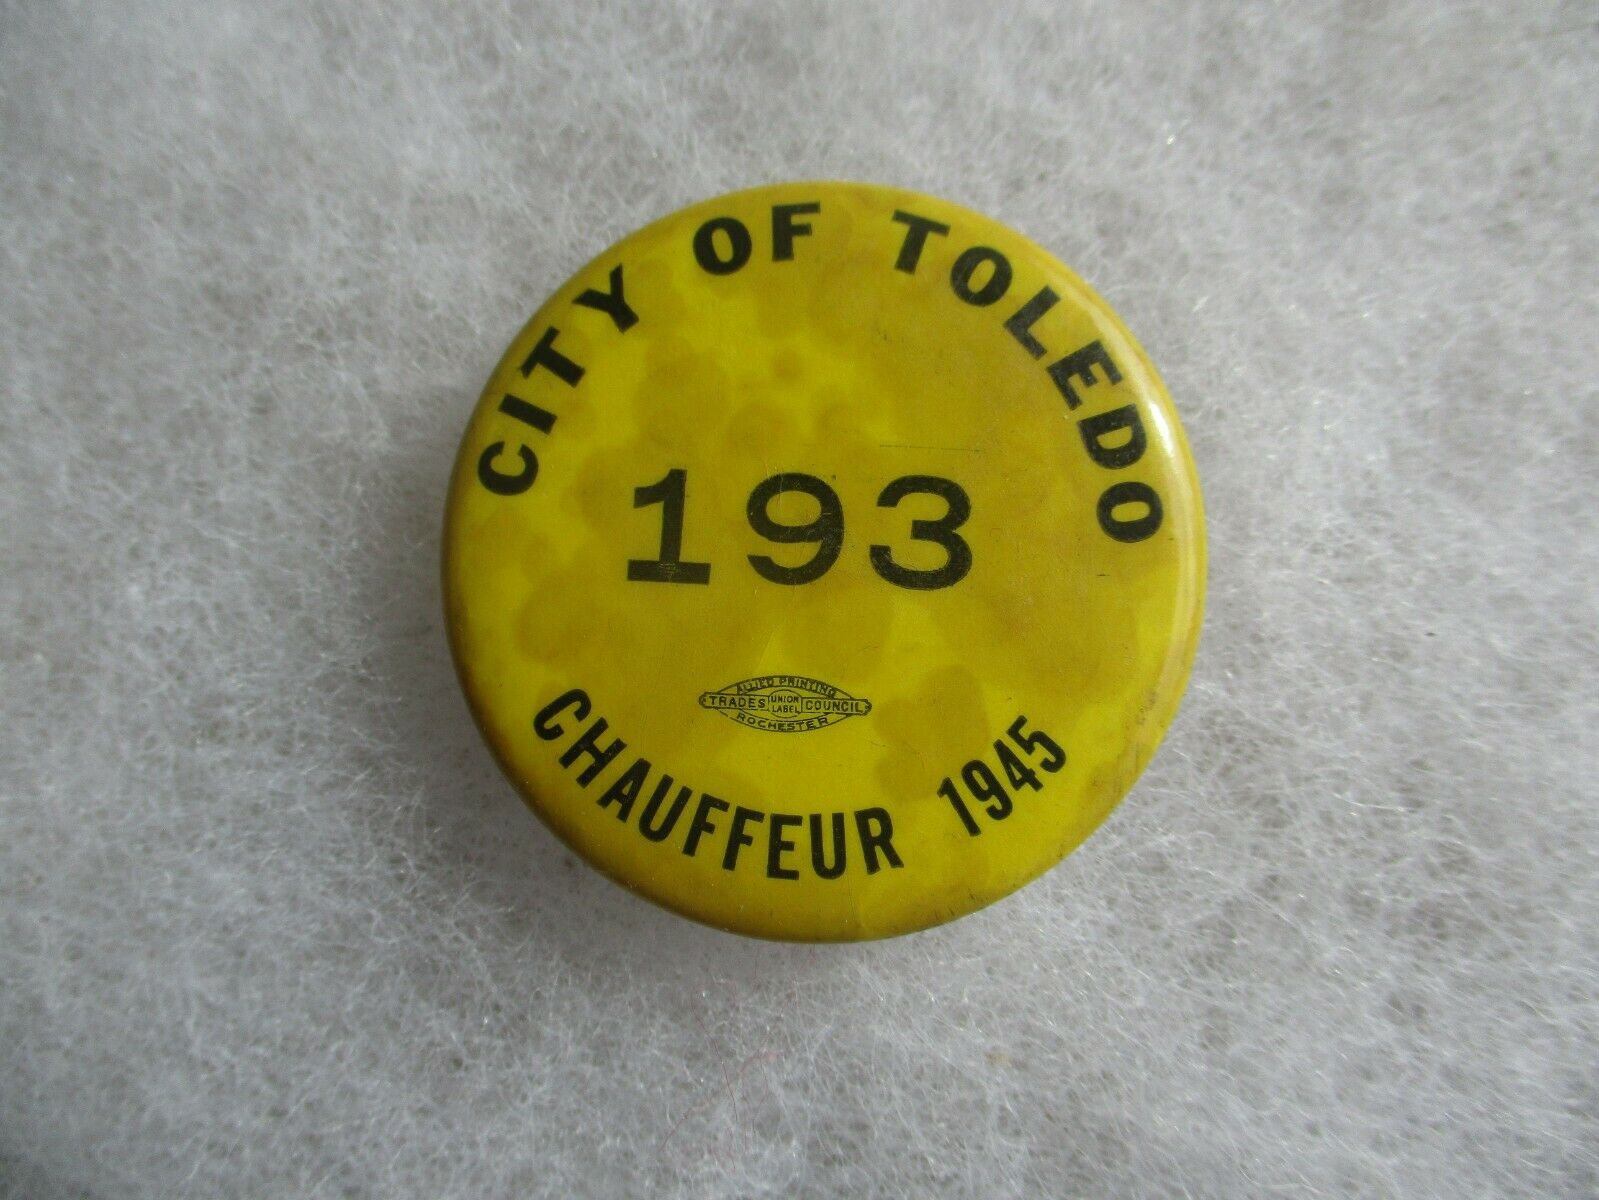 Ohio city of Toledo 1943  Chauffeur badge #  193